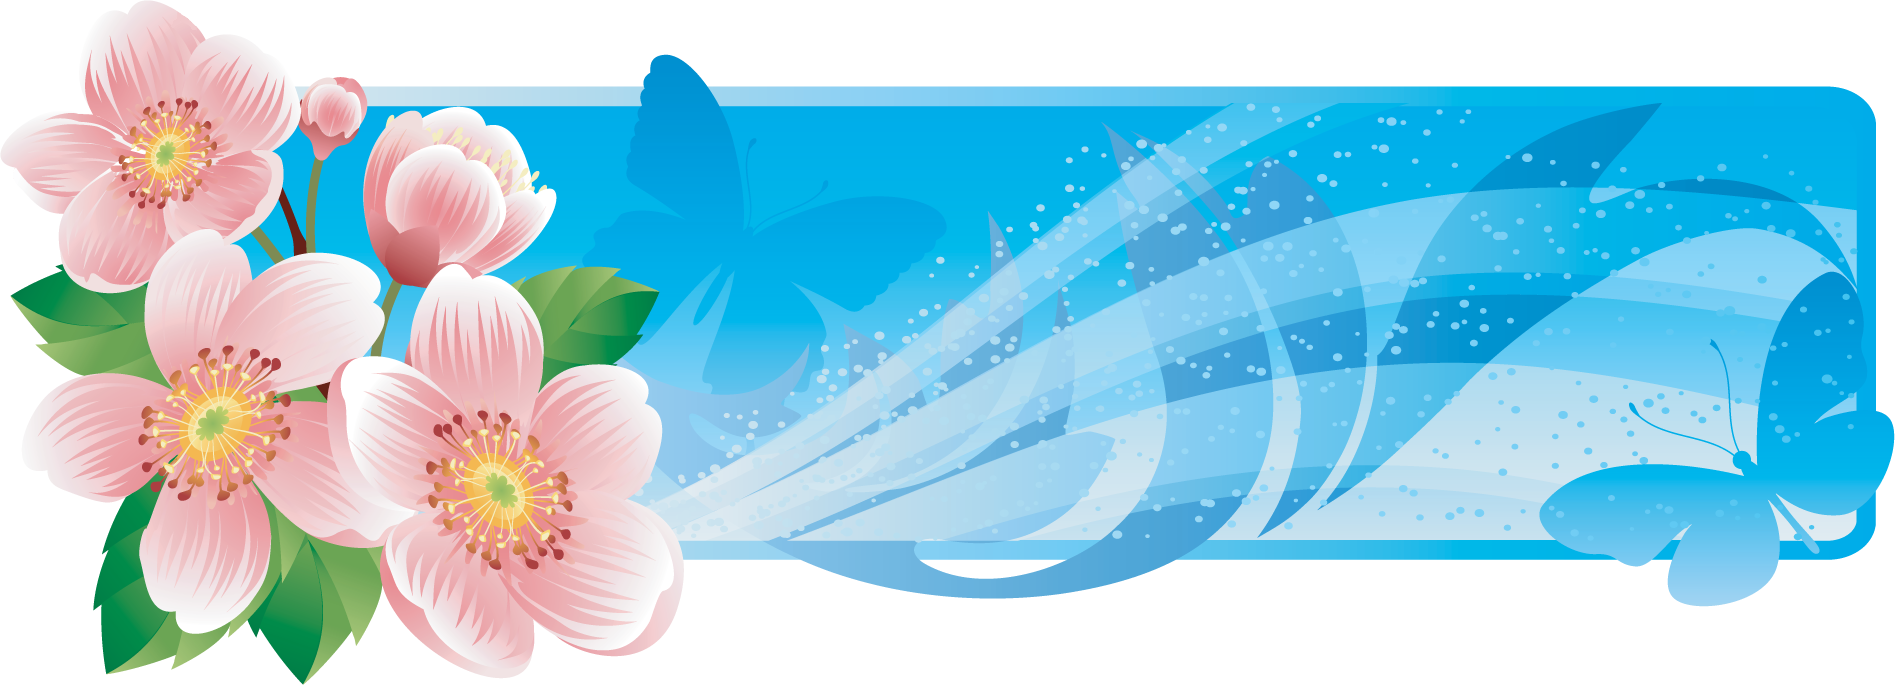 花や葉のイラスト フリー素材 バナー タイトル枠no 008 ピンク 青い蝶